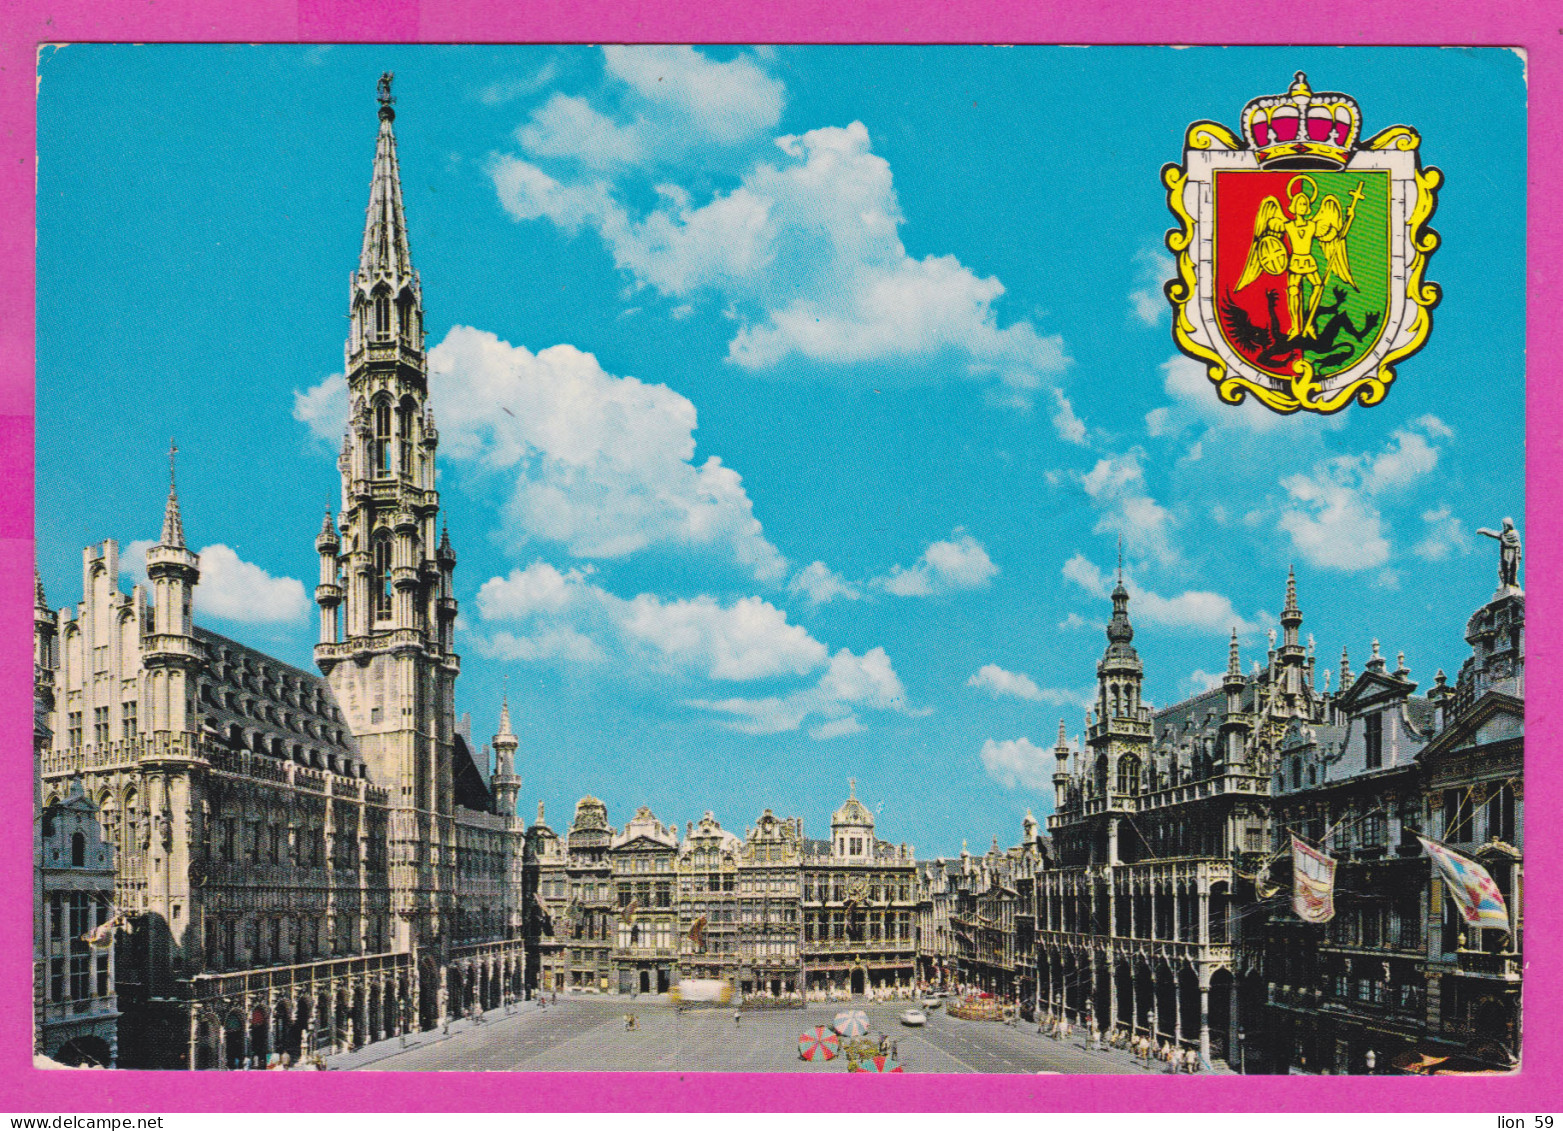 292385 / Belgium Bruxelles Brussel - Grand Square PC USED (O) 1977 - 5+5 Fr Mars And Mercur Belgique Belgien Belgio - Marktpleinen, Pleinen